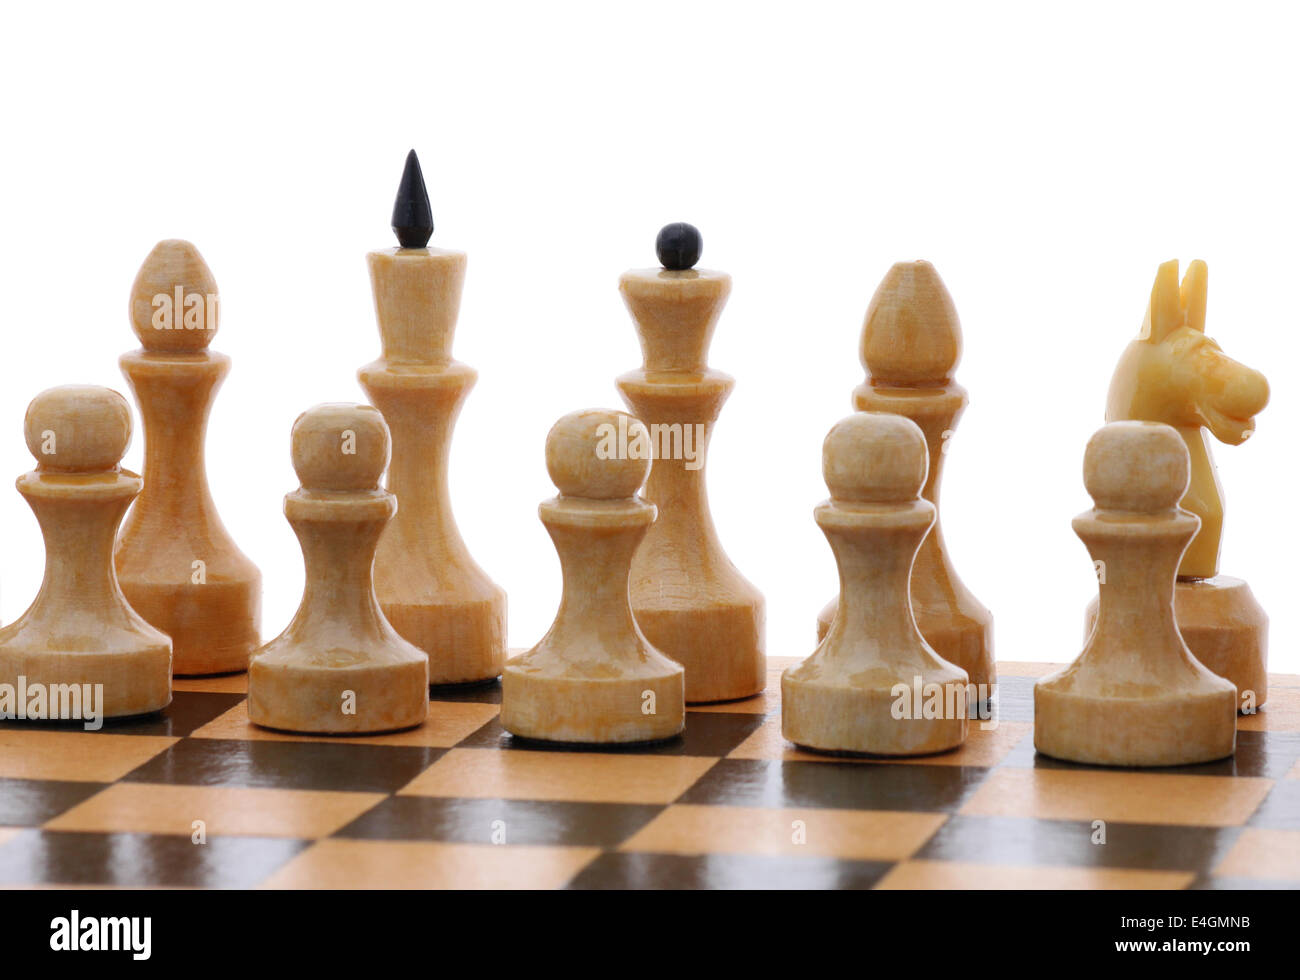 Chess Opening: Italian Game Stock Photo - Alamy